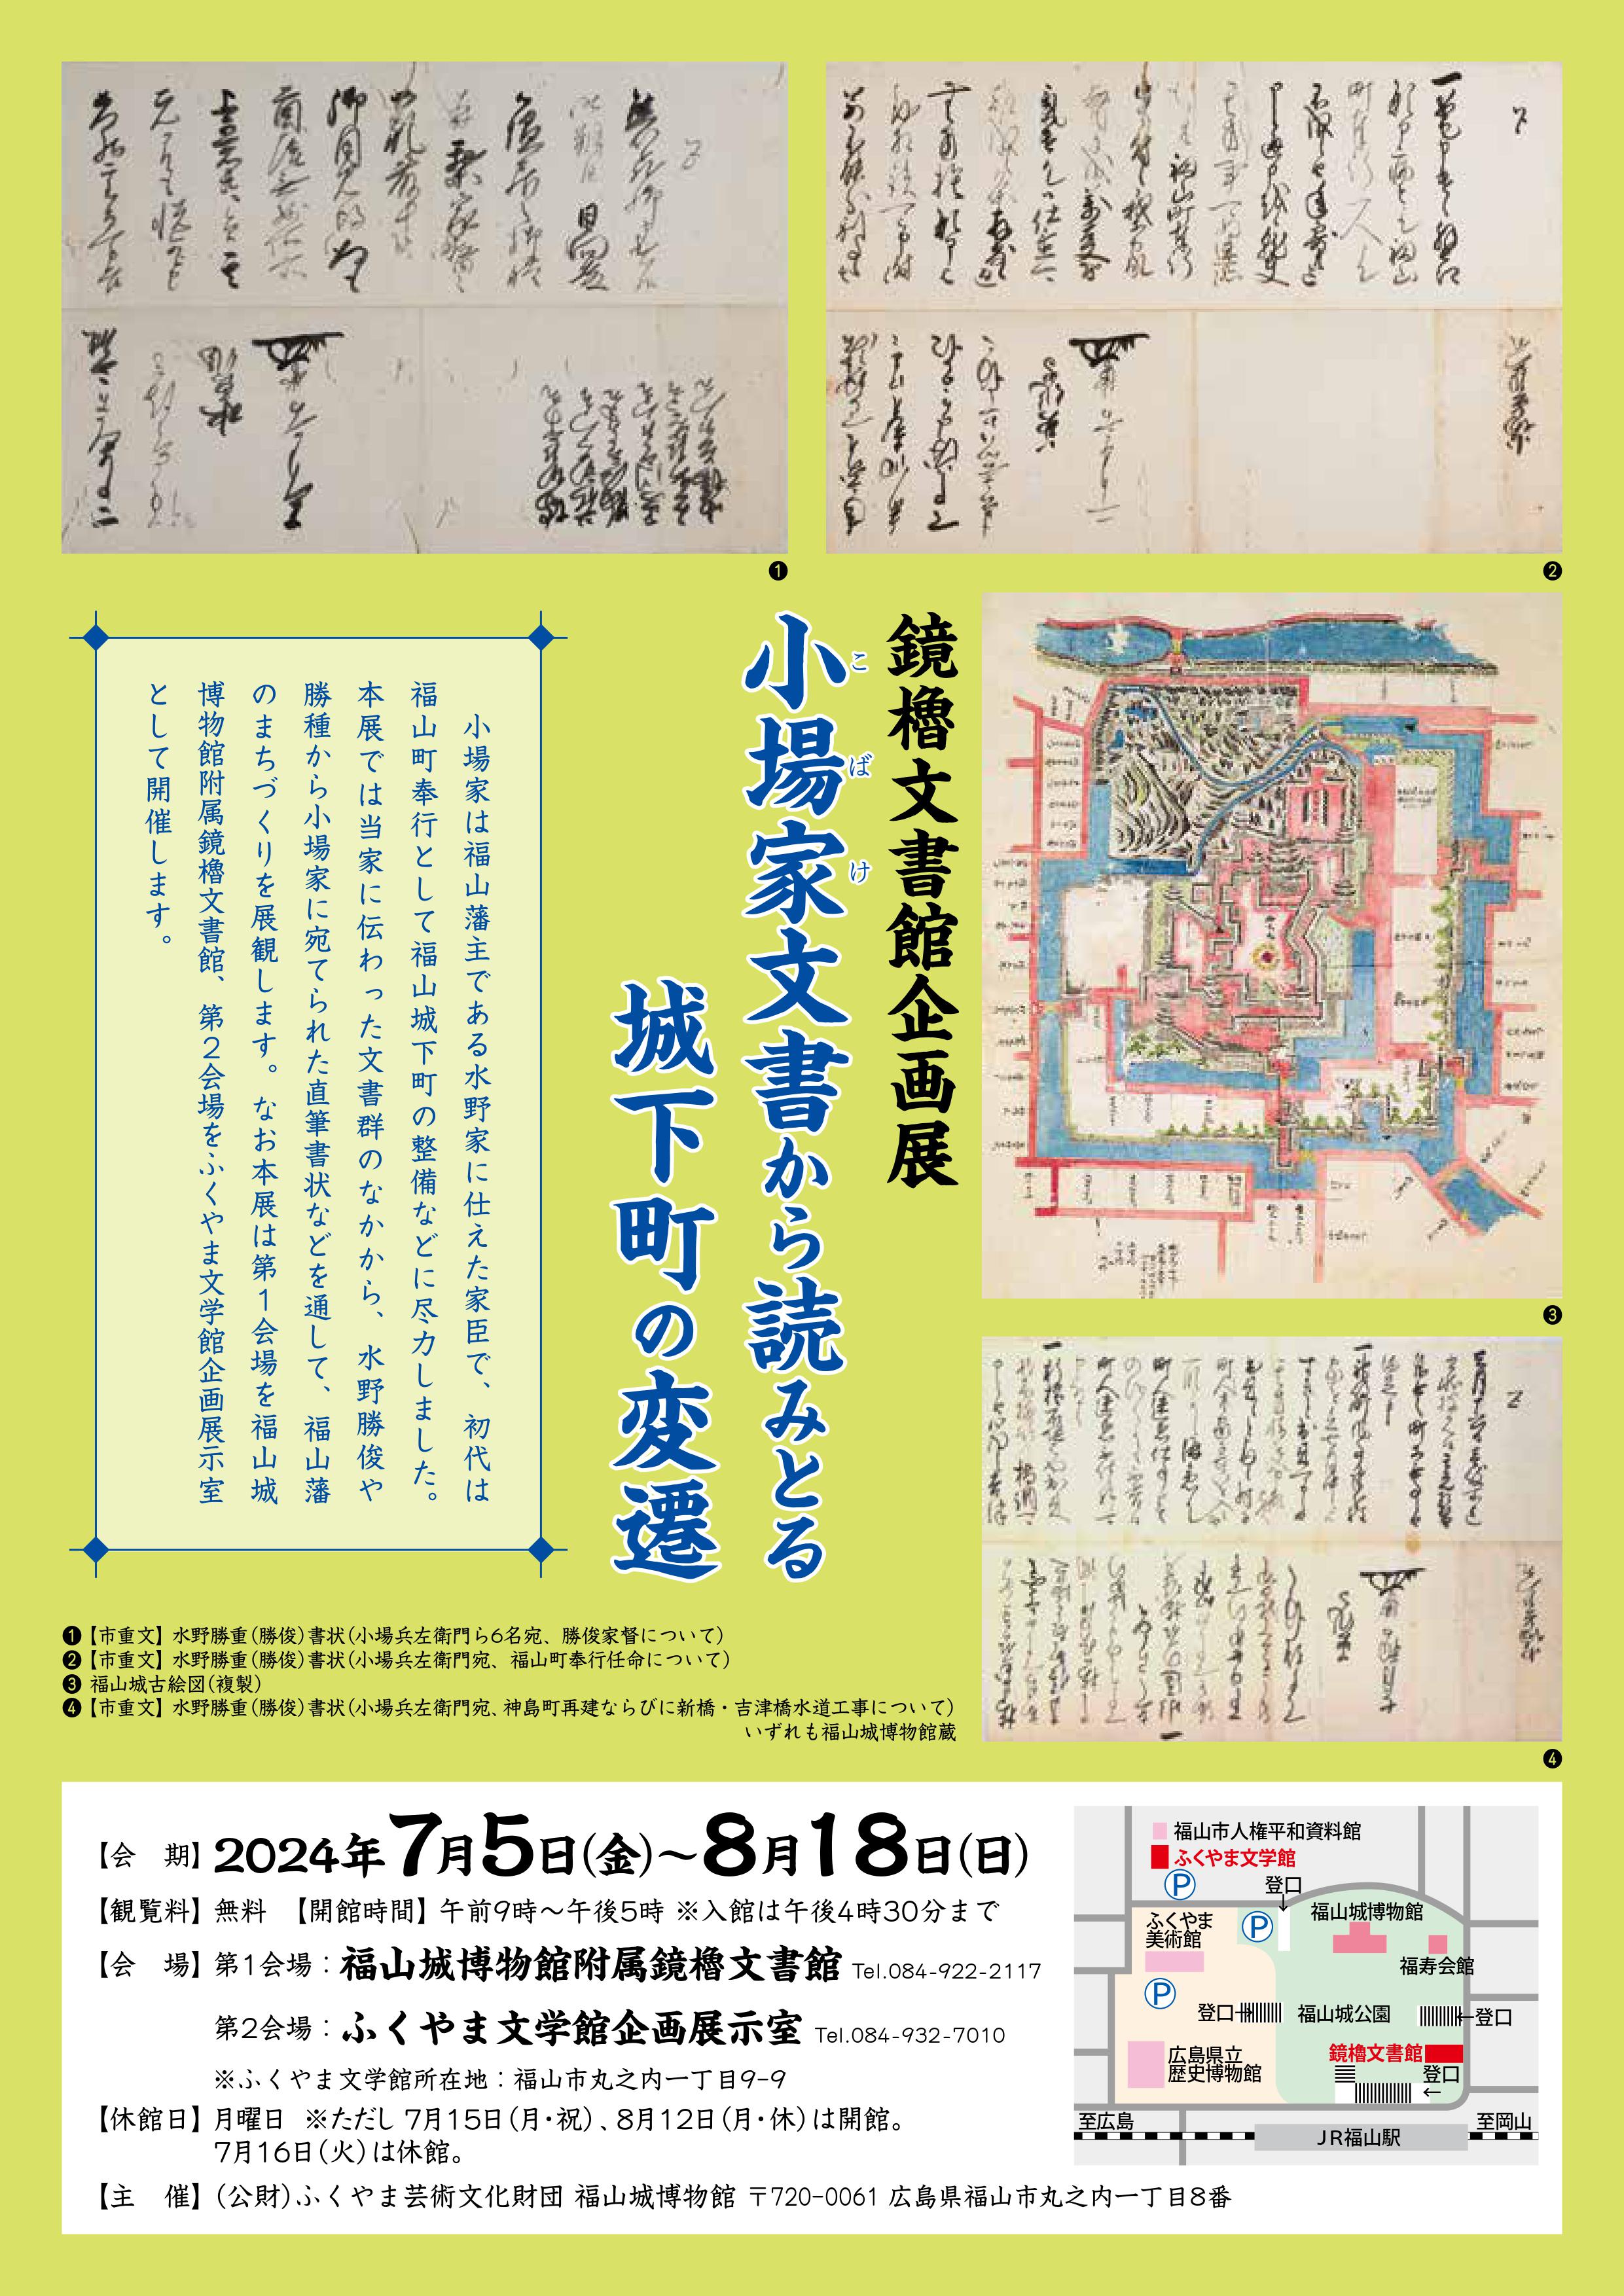 福山城博物館附属鏡櫓文書館企画展 「小場家文書から読みとる城下町の変遷」開催について